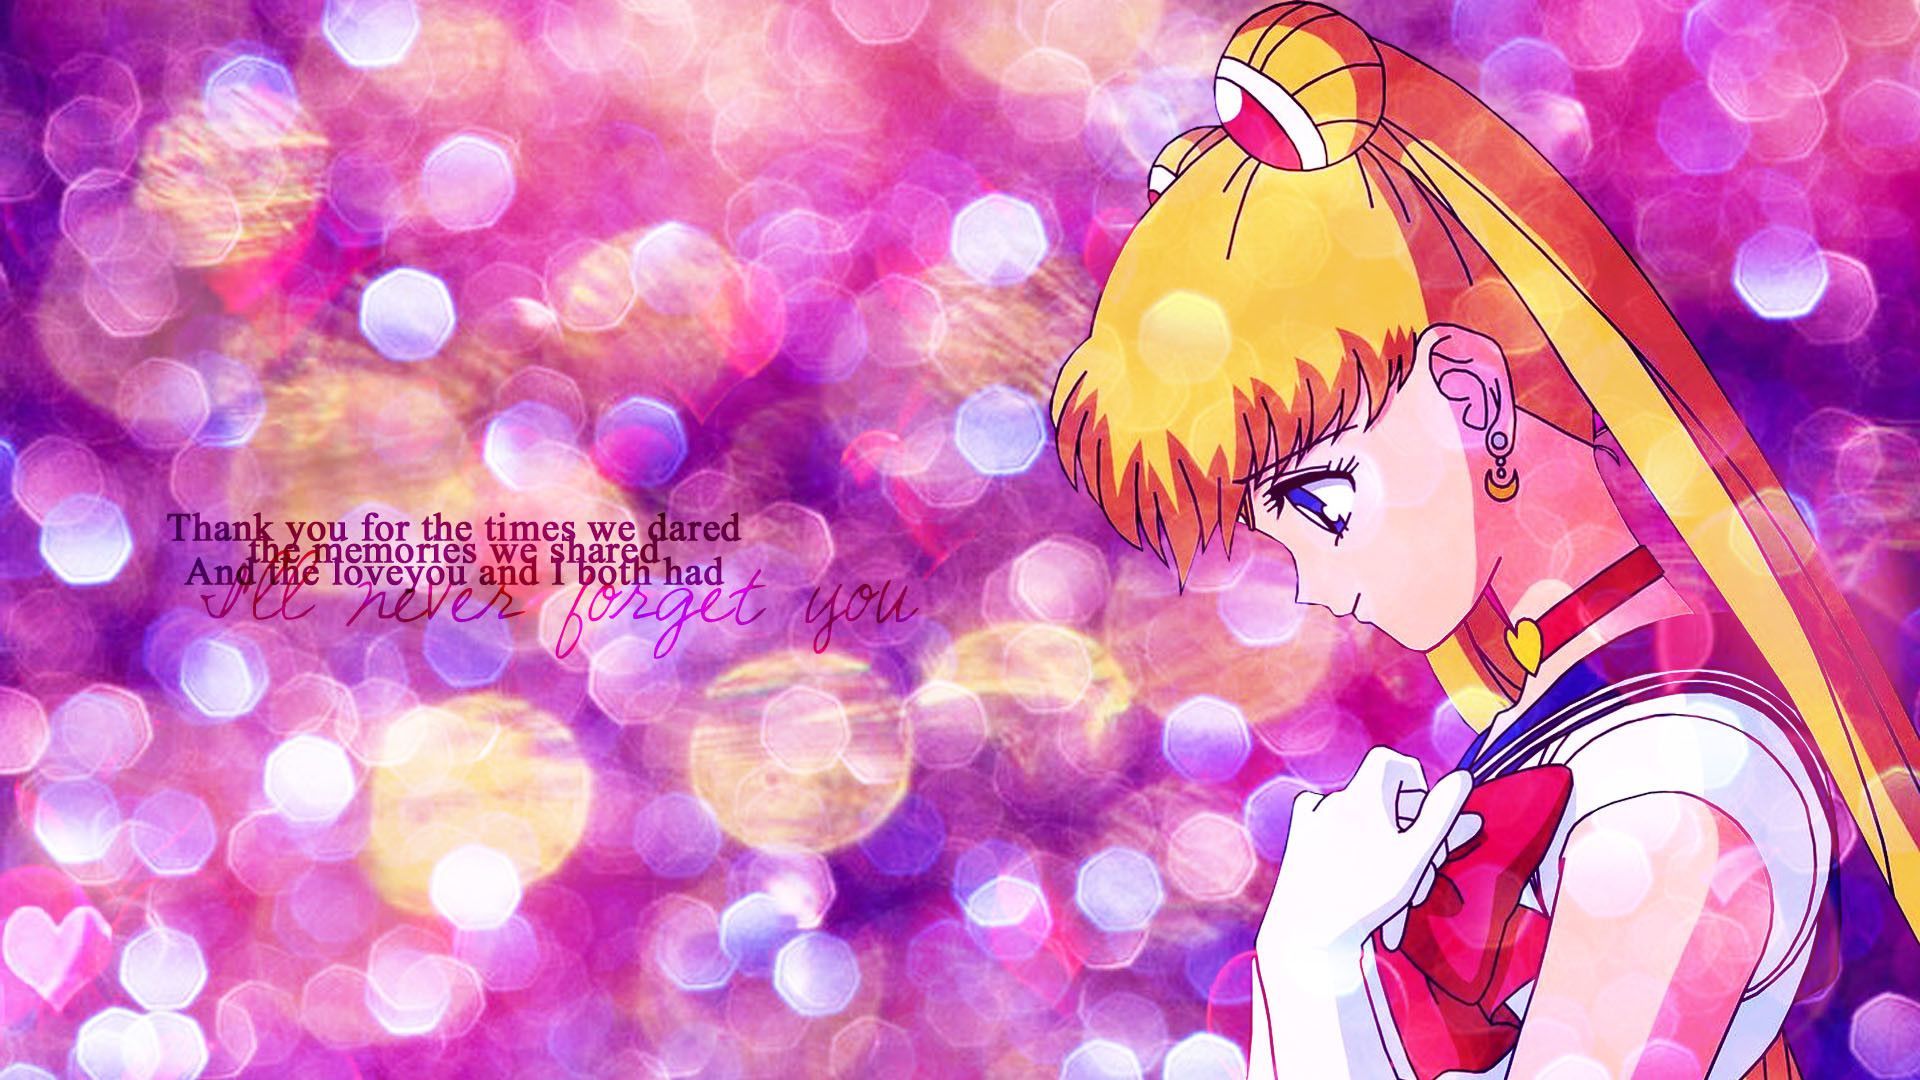 Anime, sailor moon wallpaper - Sailor Moon